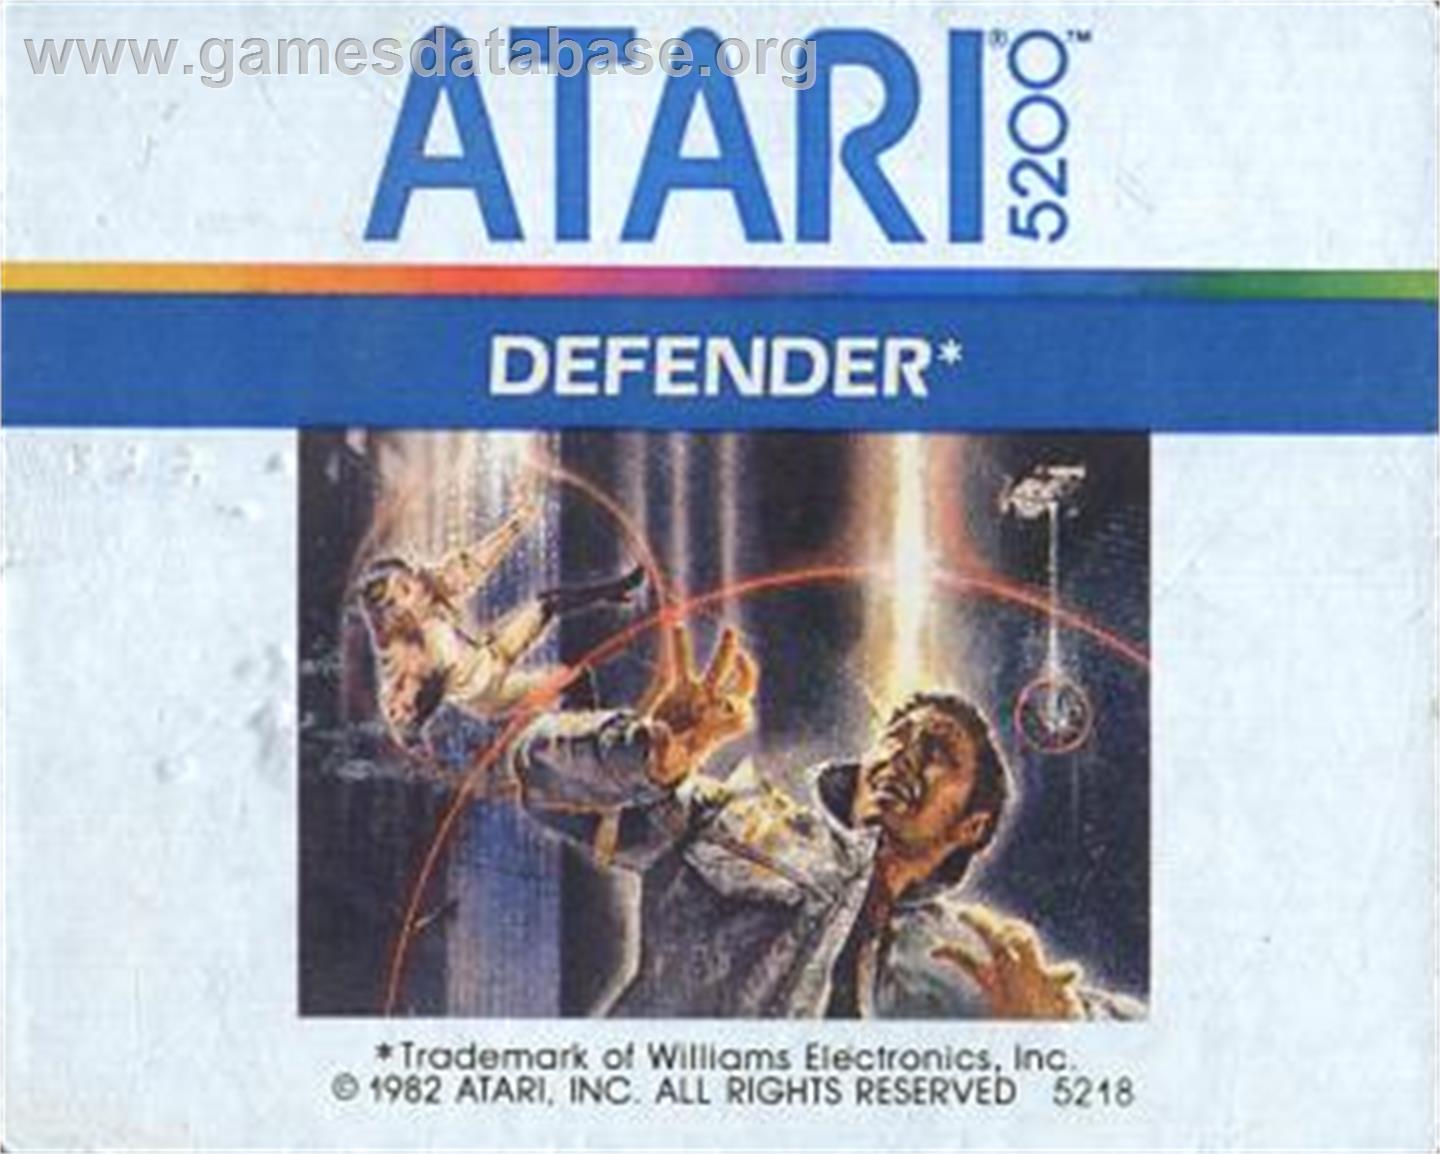 Defender - Atari 5200 - Artwork - Cartridge Top